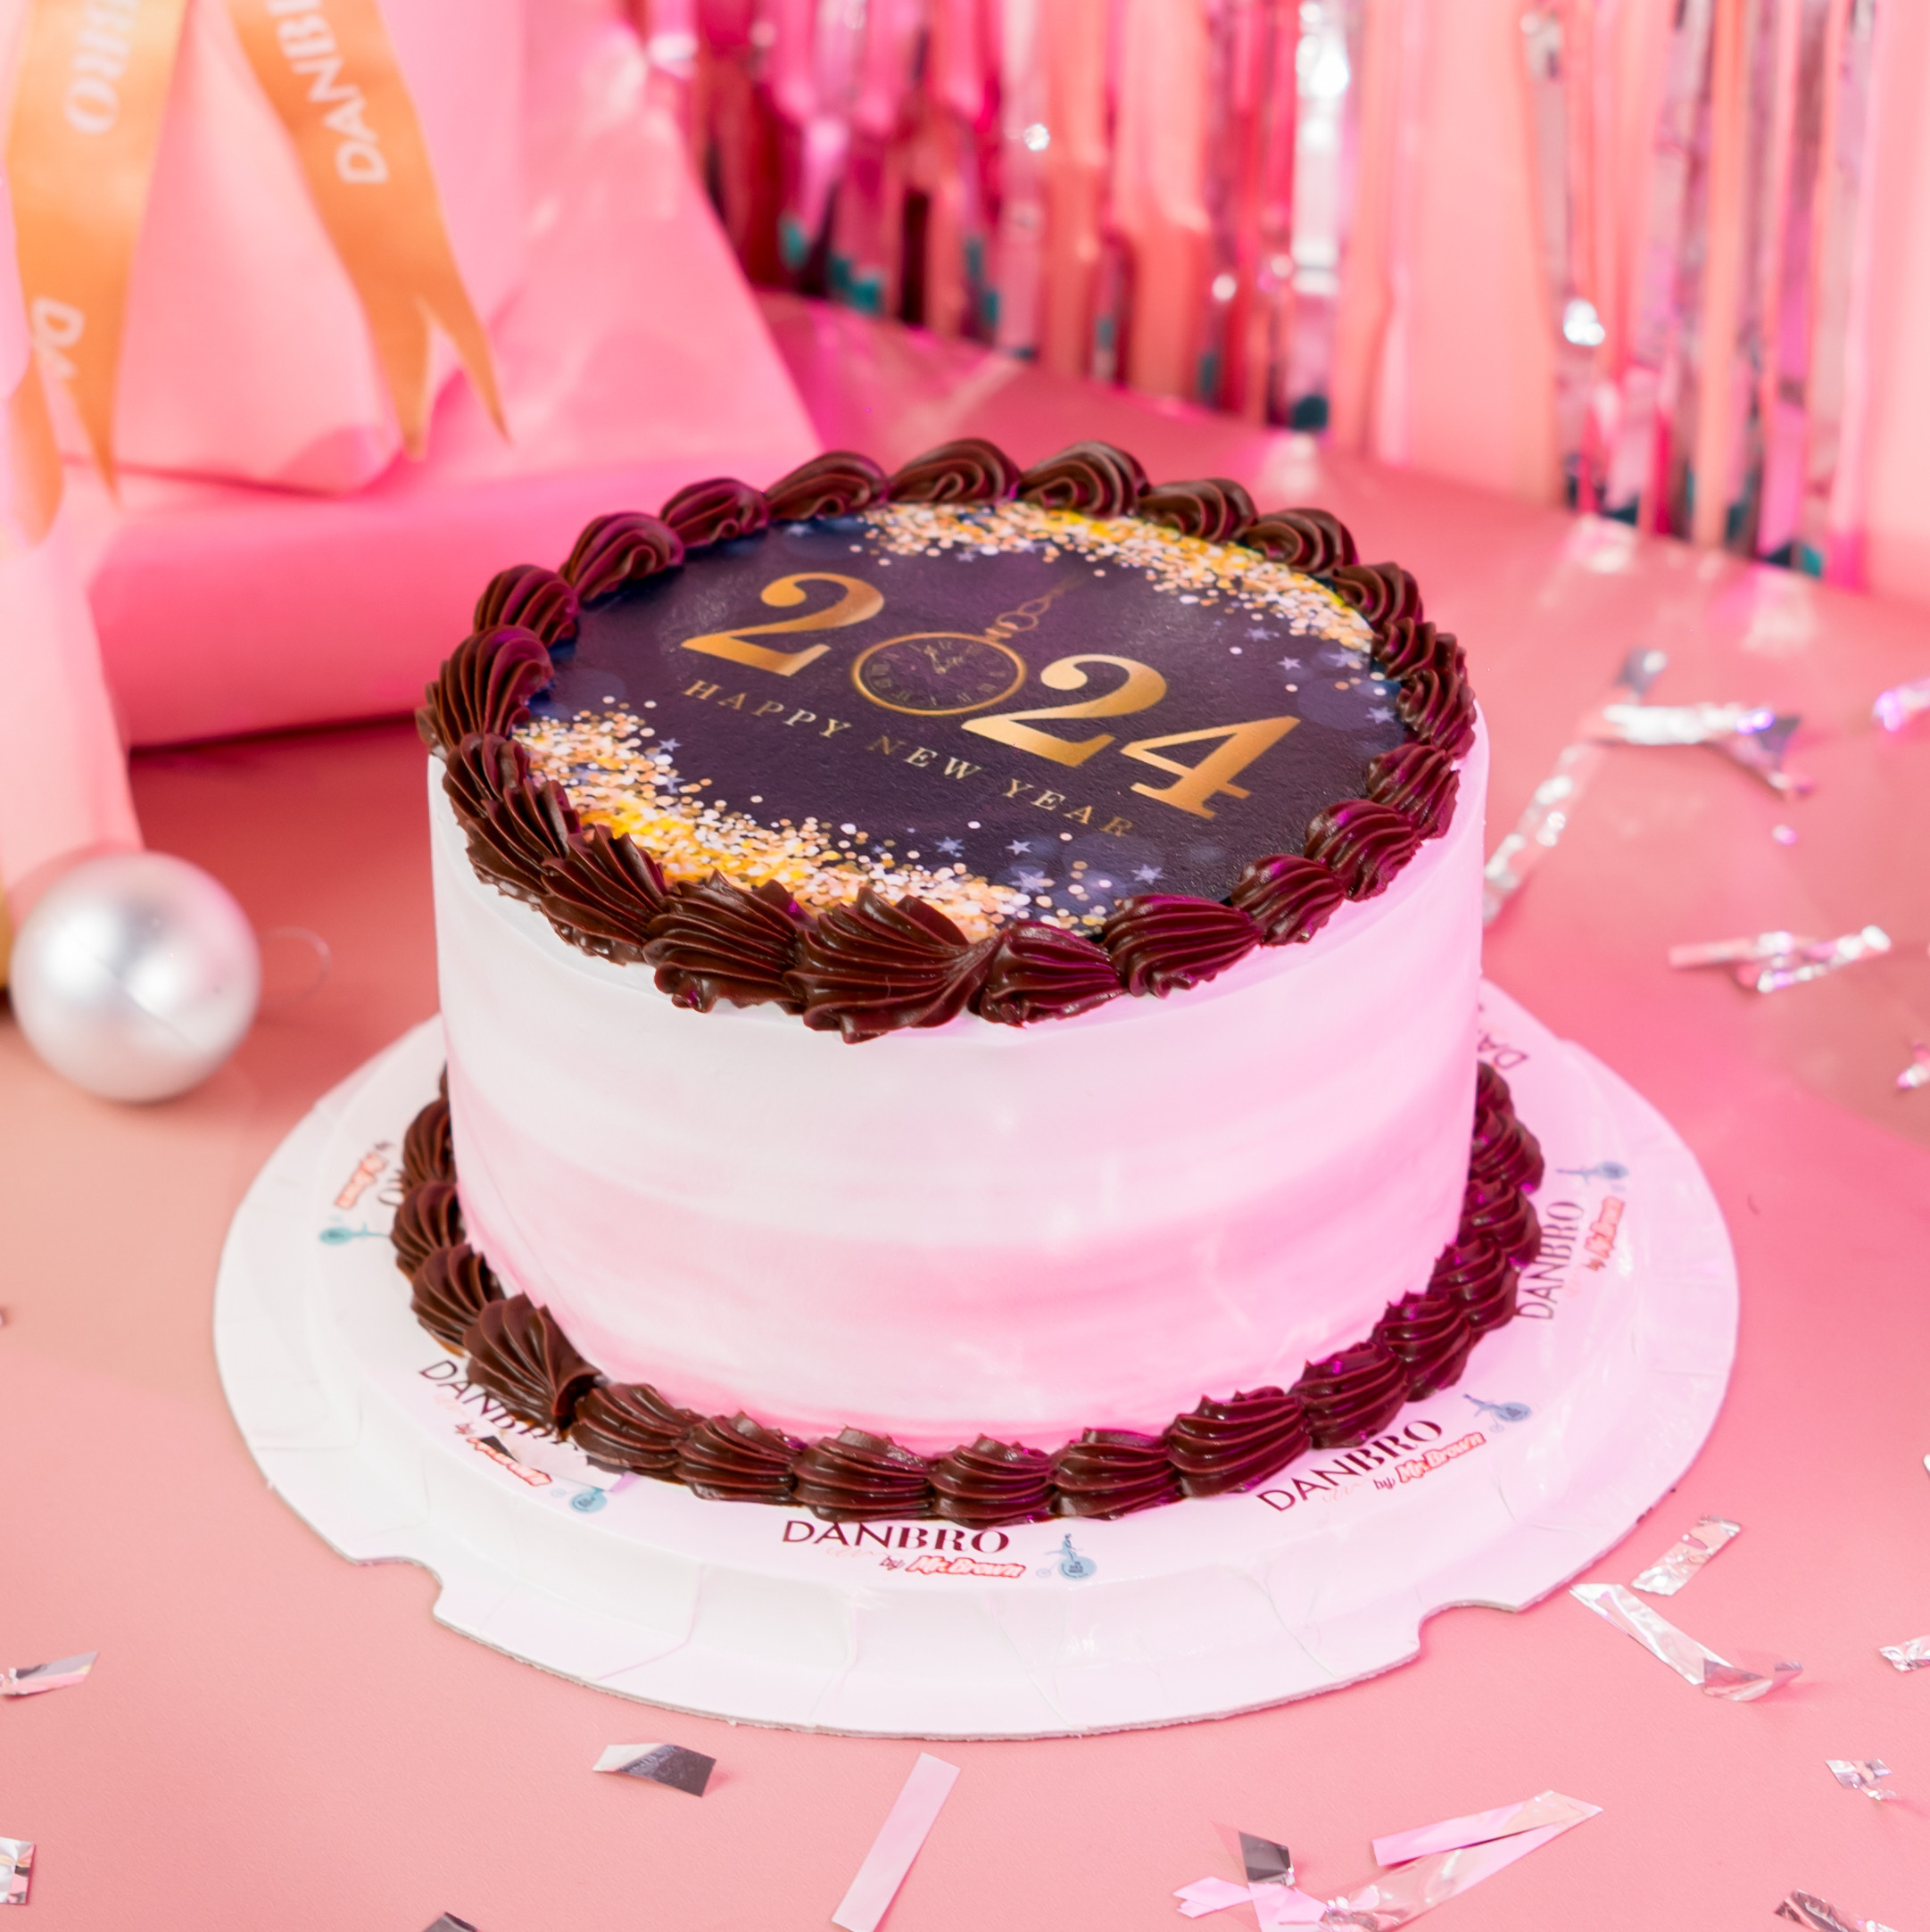 Birthday Cake for Mom | Order Online Cakes- Kukkr cakes